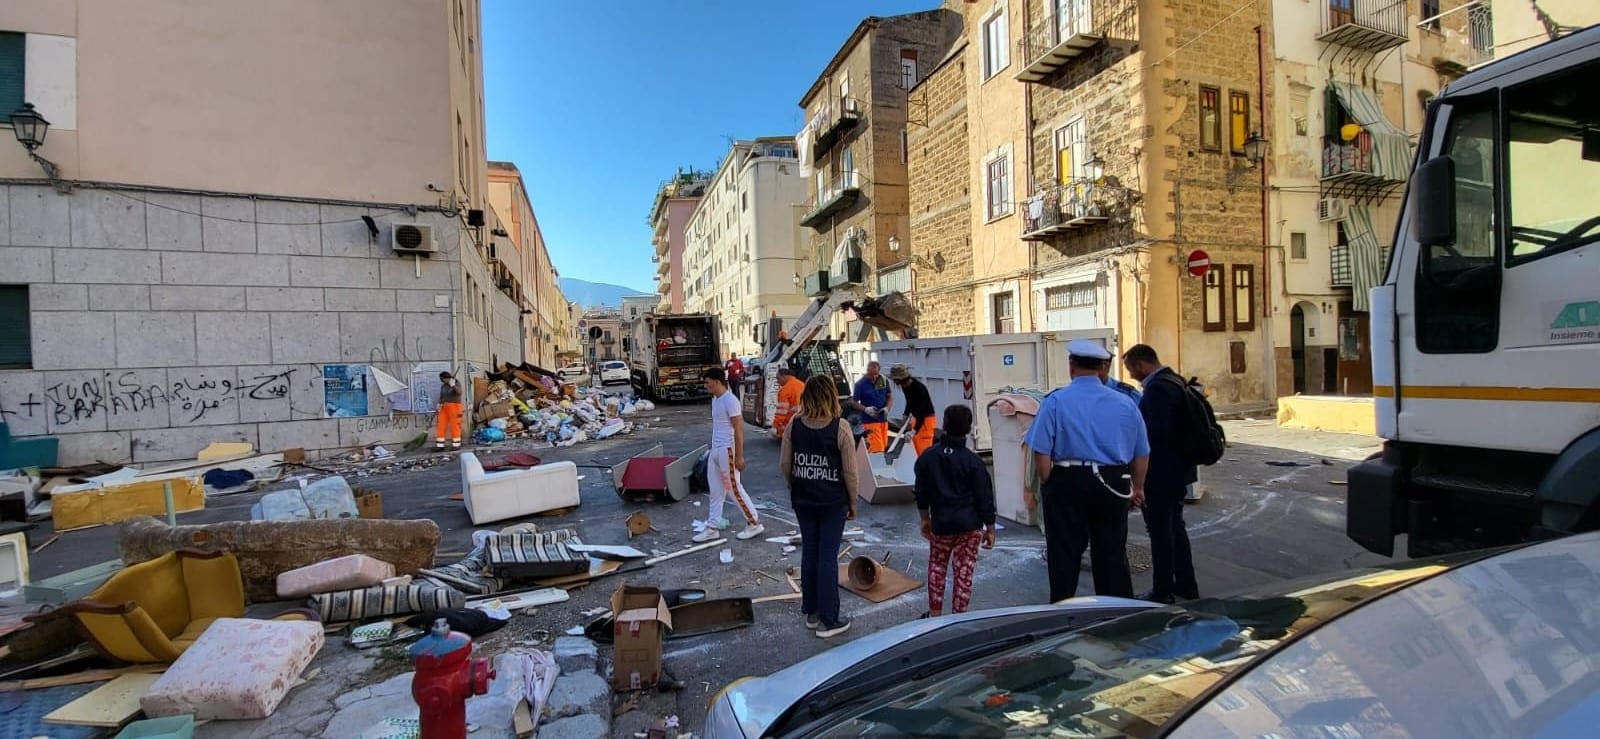 Bloccano una strada con rifiuti ingombranti: la protesta dei residenti per la questione spazzatura